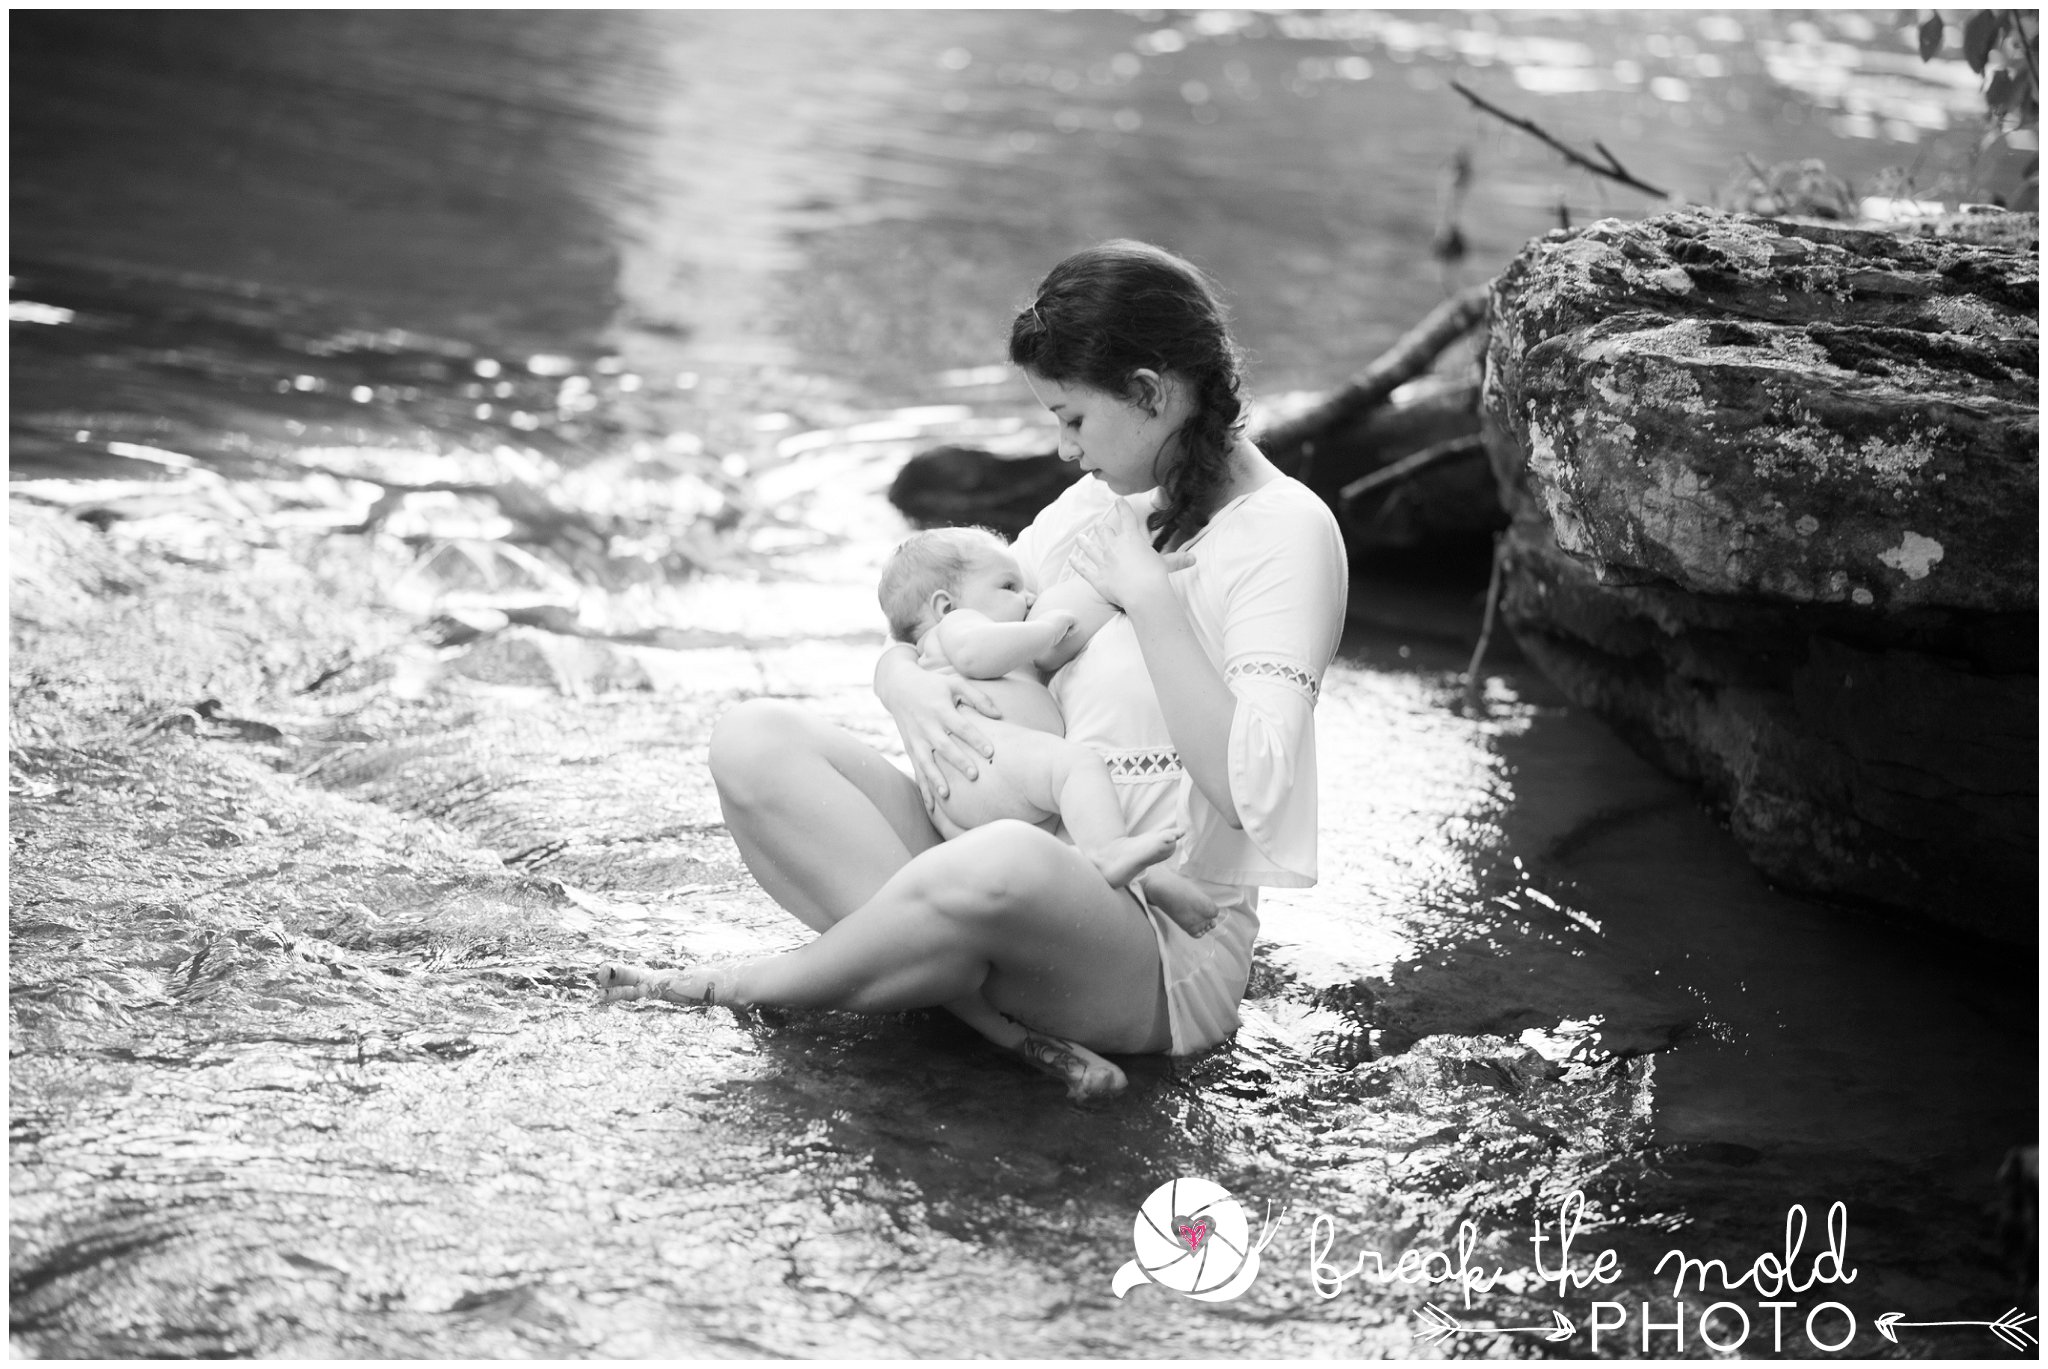 break-the-mold-photo-nursing-mothers-waterfall-women-celebrate-beauty_5430.jpg